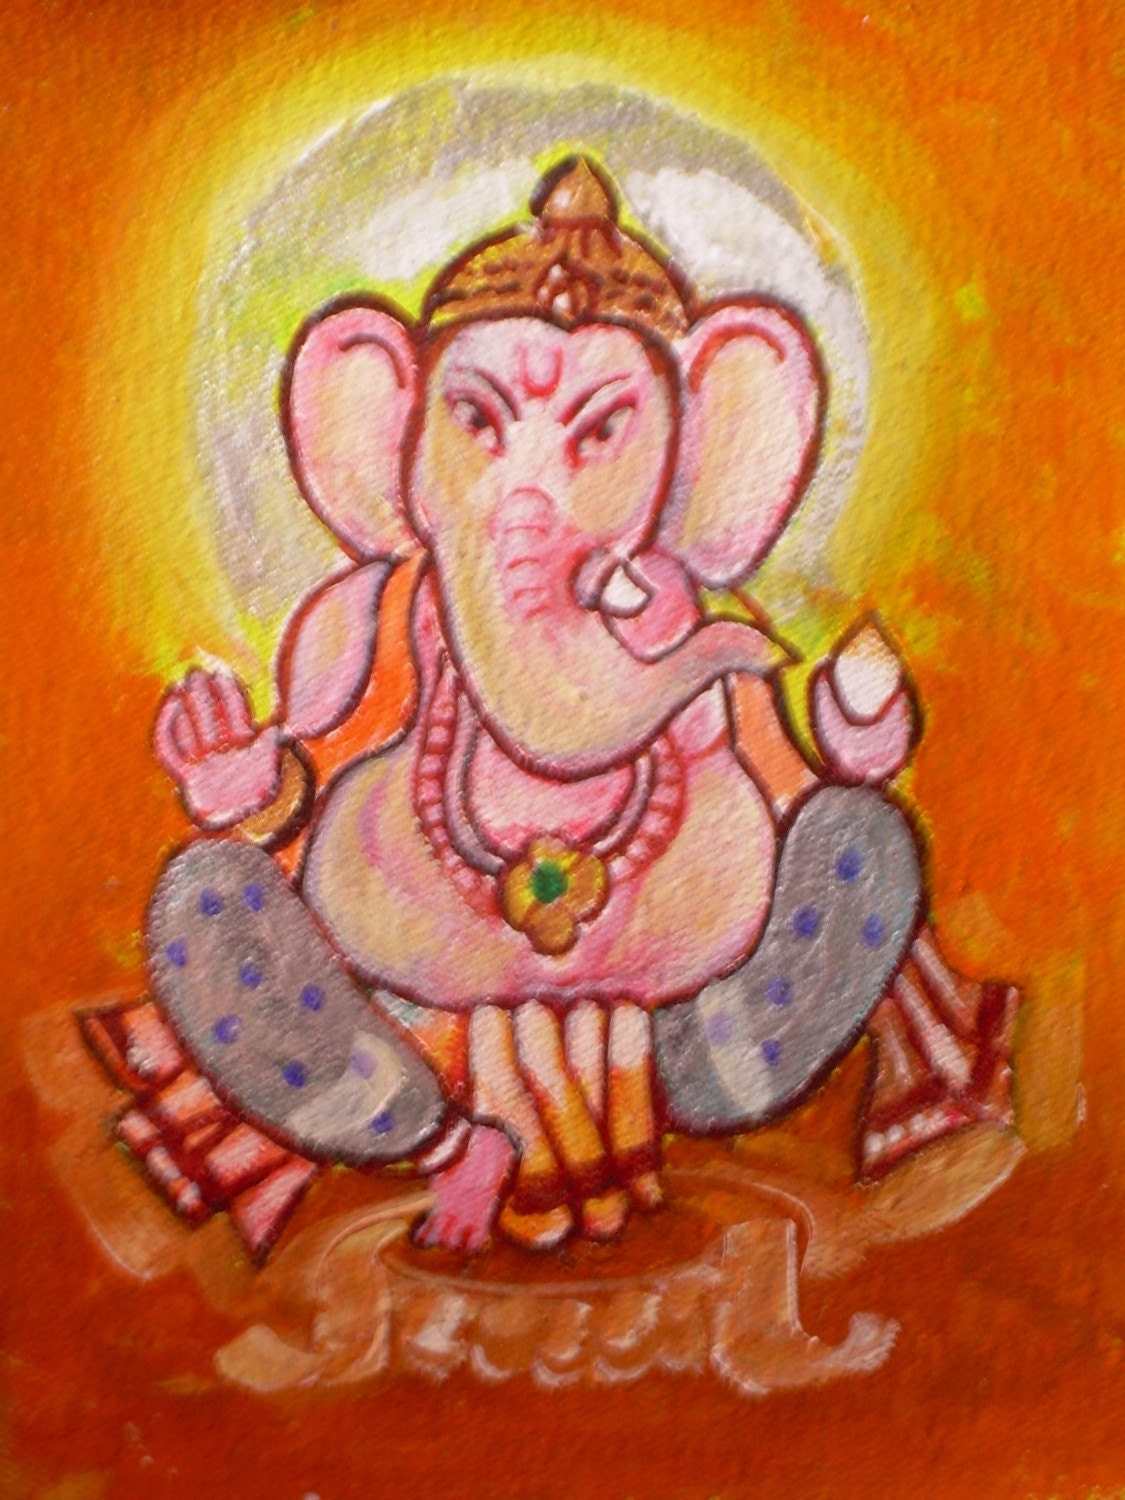 Abstract Lord Ganesha